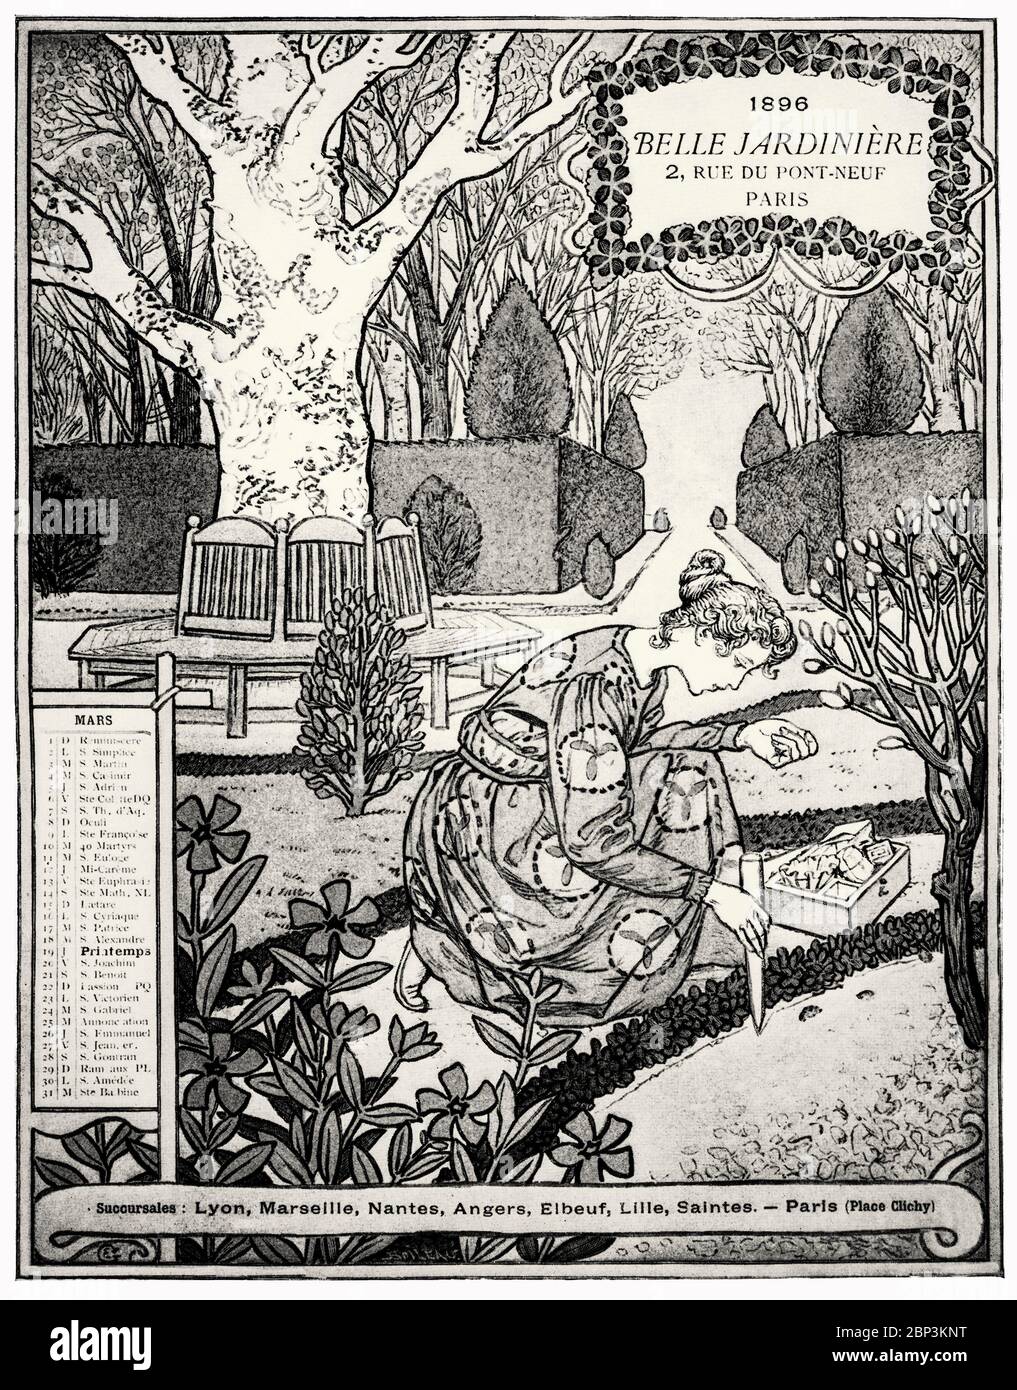 'Marc from the Bella Jardiniere Calendar' di Eugène Grasset (1845-1917), un artista decorativo svizzero che ha lavorato a Parigi, in Francia, in una varietà di settori di design creativo durante la Belle Époque. È considerato un pioniere nel design Art Nouveau. Foto Stock